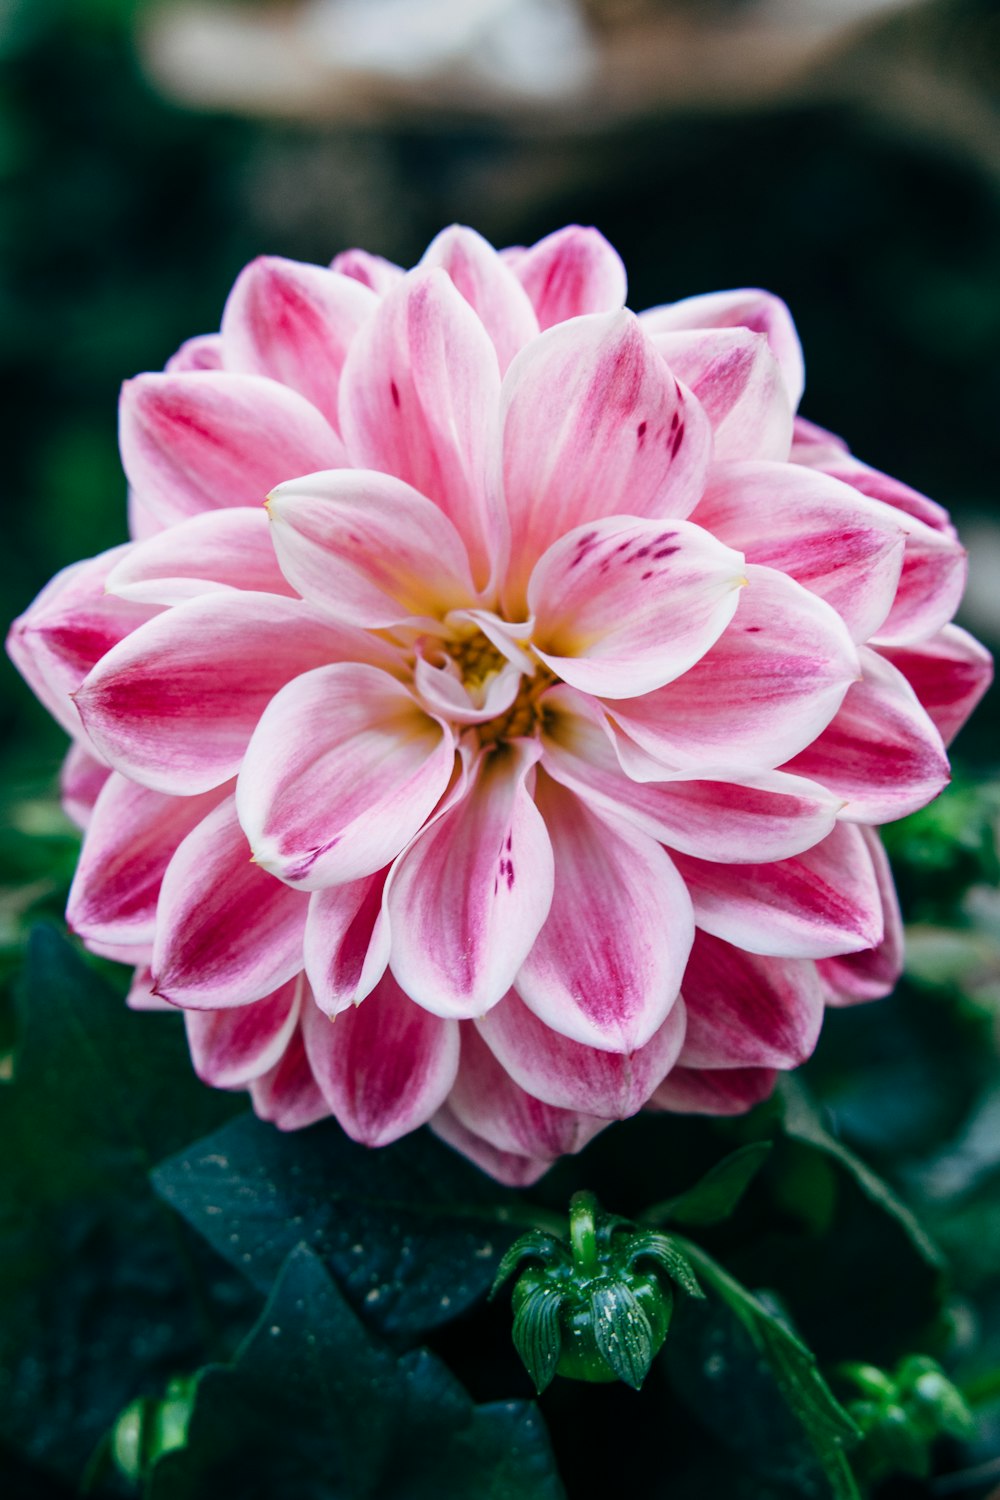 pink flower in macro shot